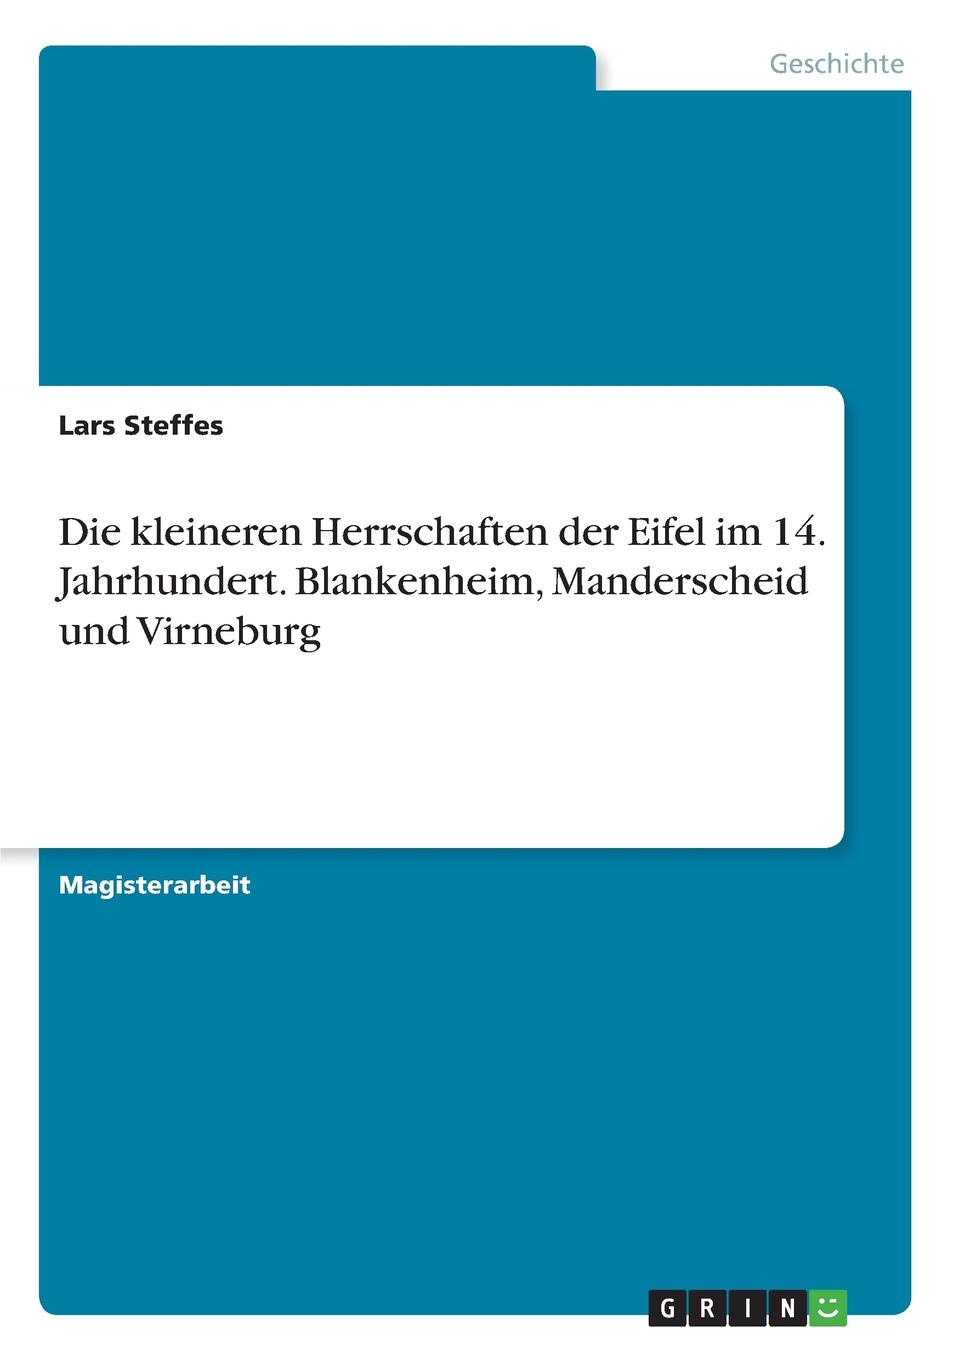 Die kleineren Herrschaften der Eifel im 14. Jahrhundert. Blankenheim, Manderscheid und Virneburg